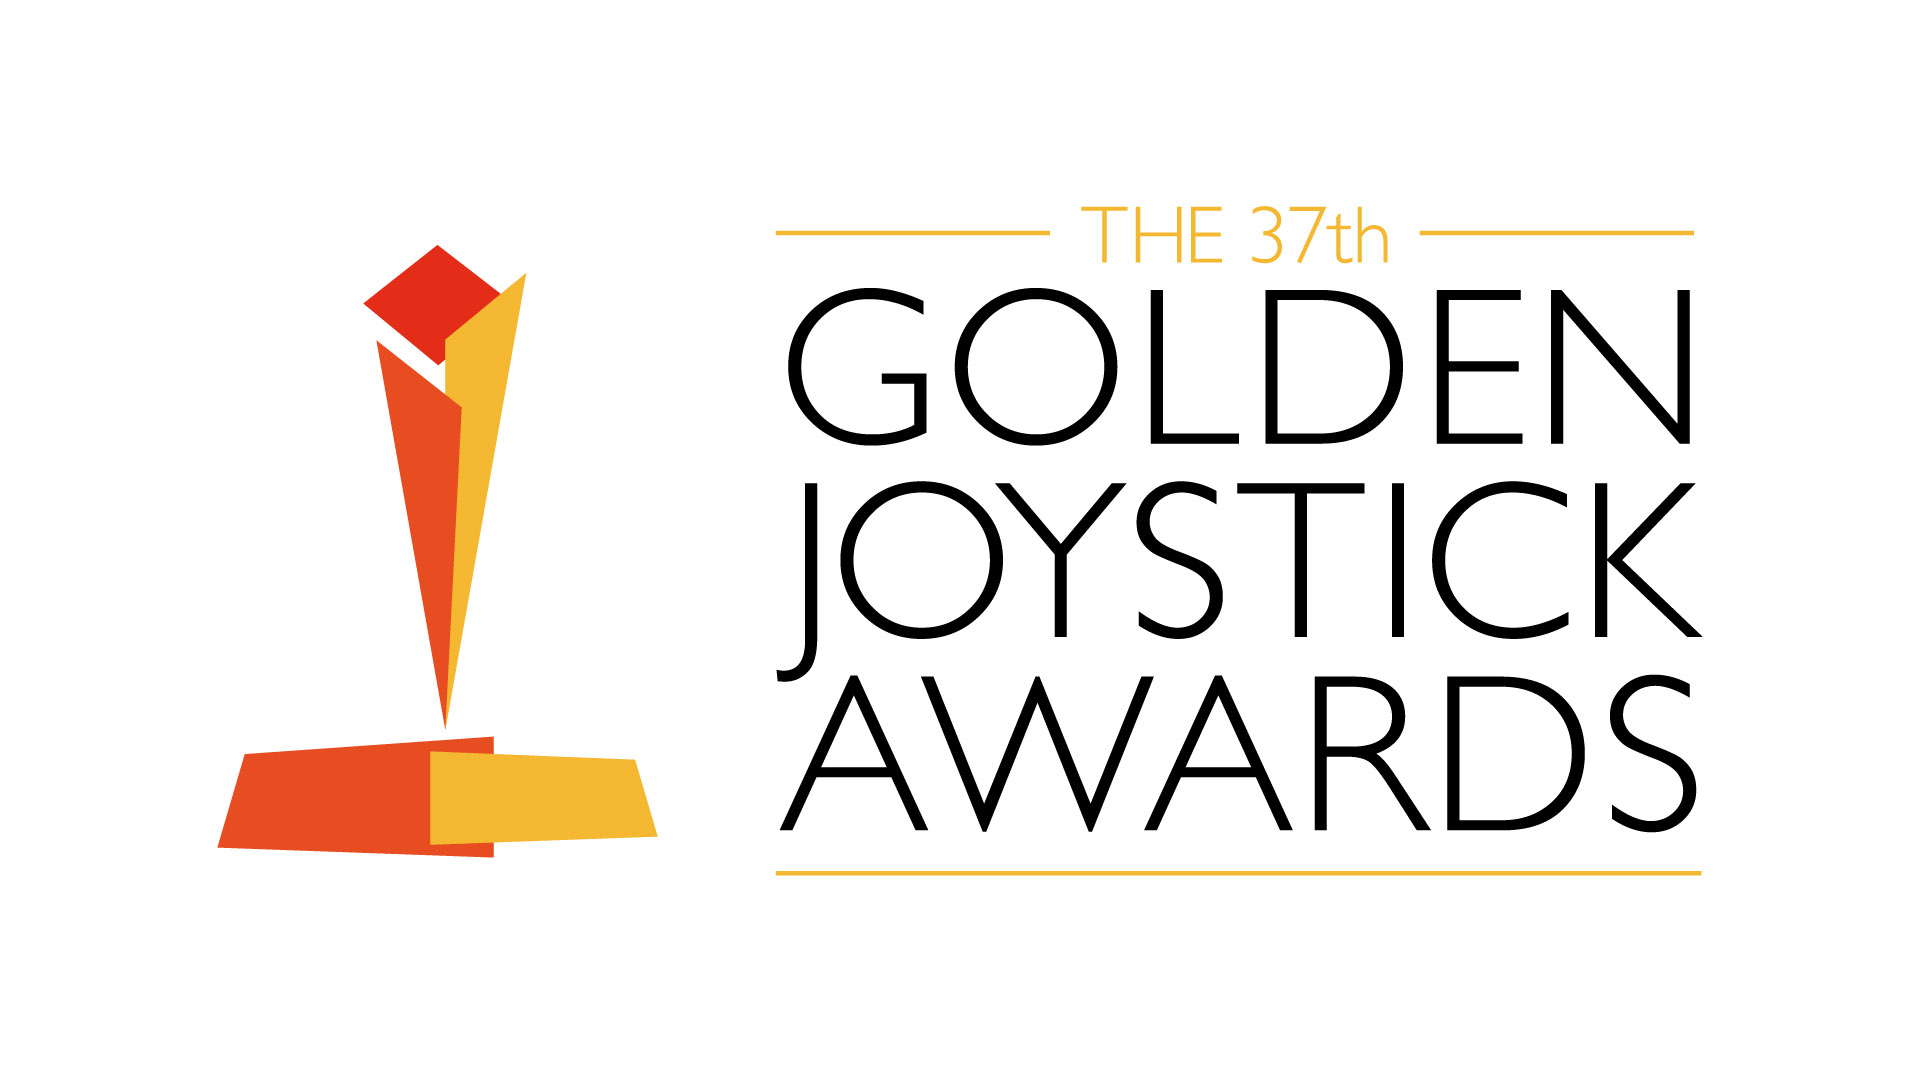 the golden joystick awards, golden joystick award news, golden joystick, golden joystick awards logo